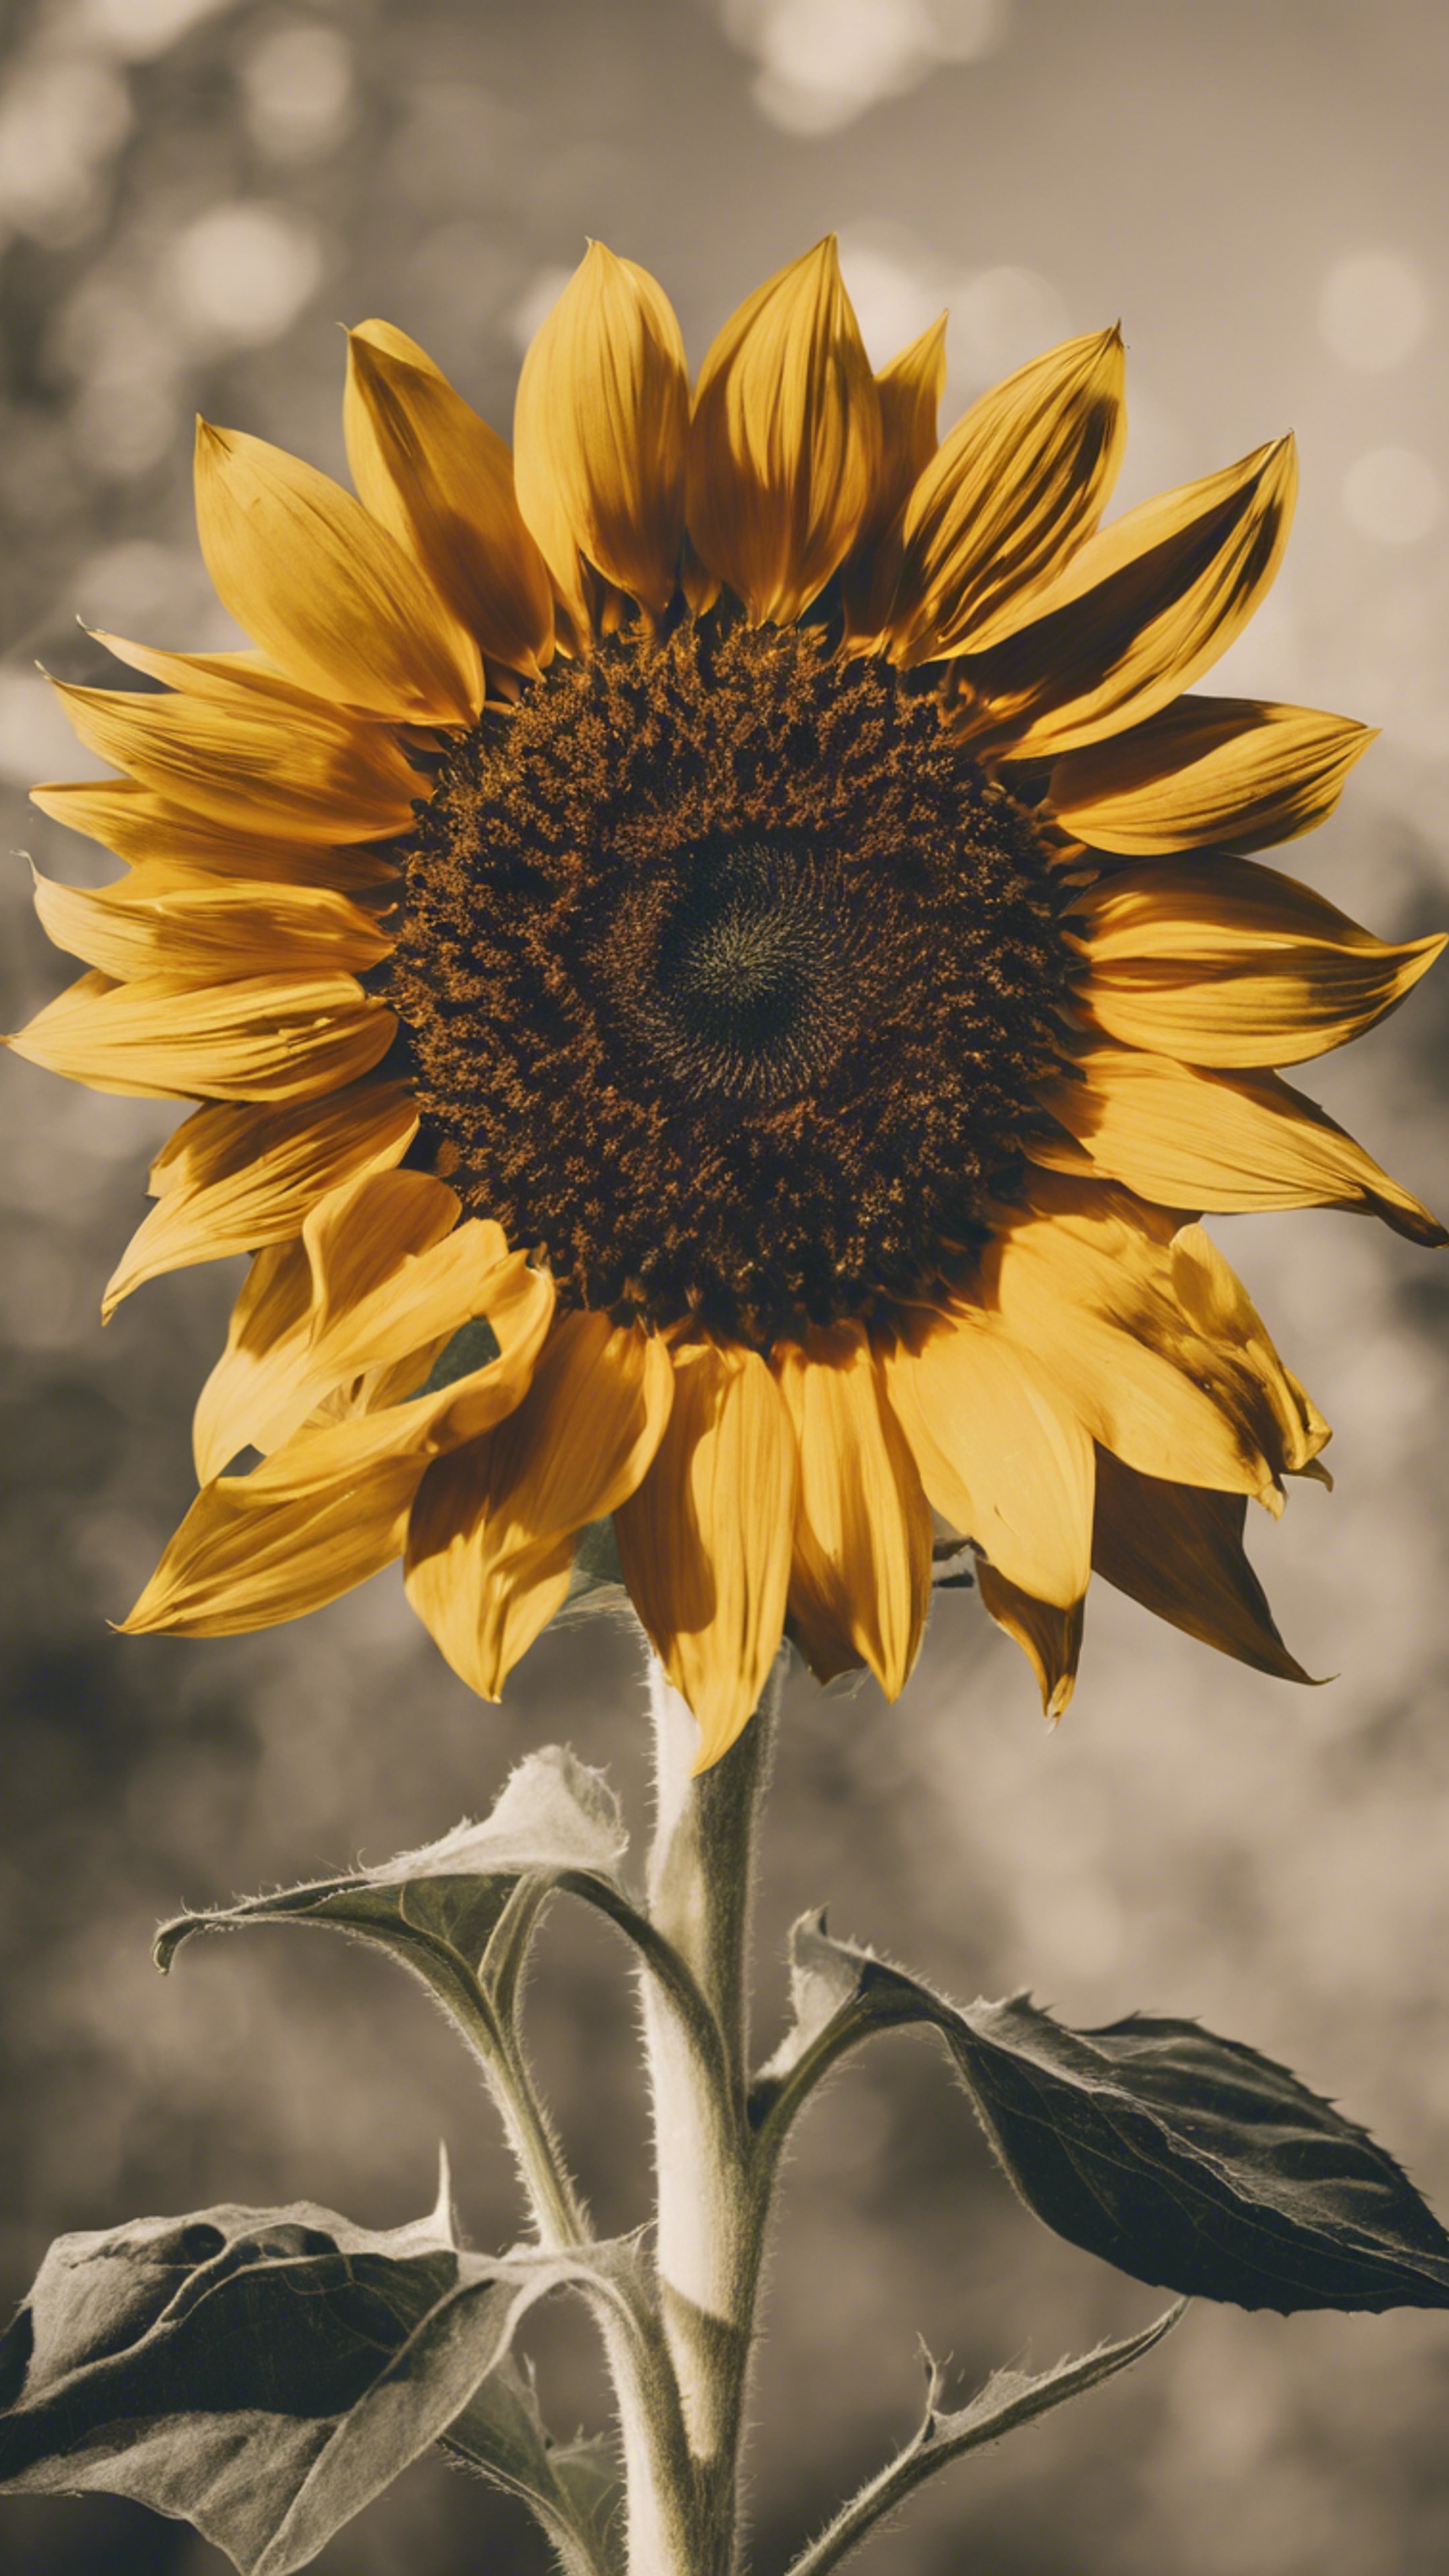 A stylized retro sunflower with bold yellow petals and a dark brown center. Divar kağızı[13785a0774844f708a81]